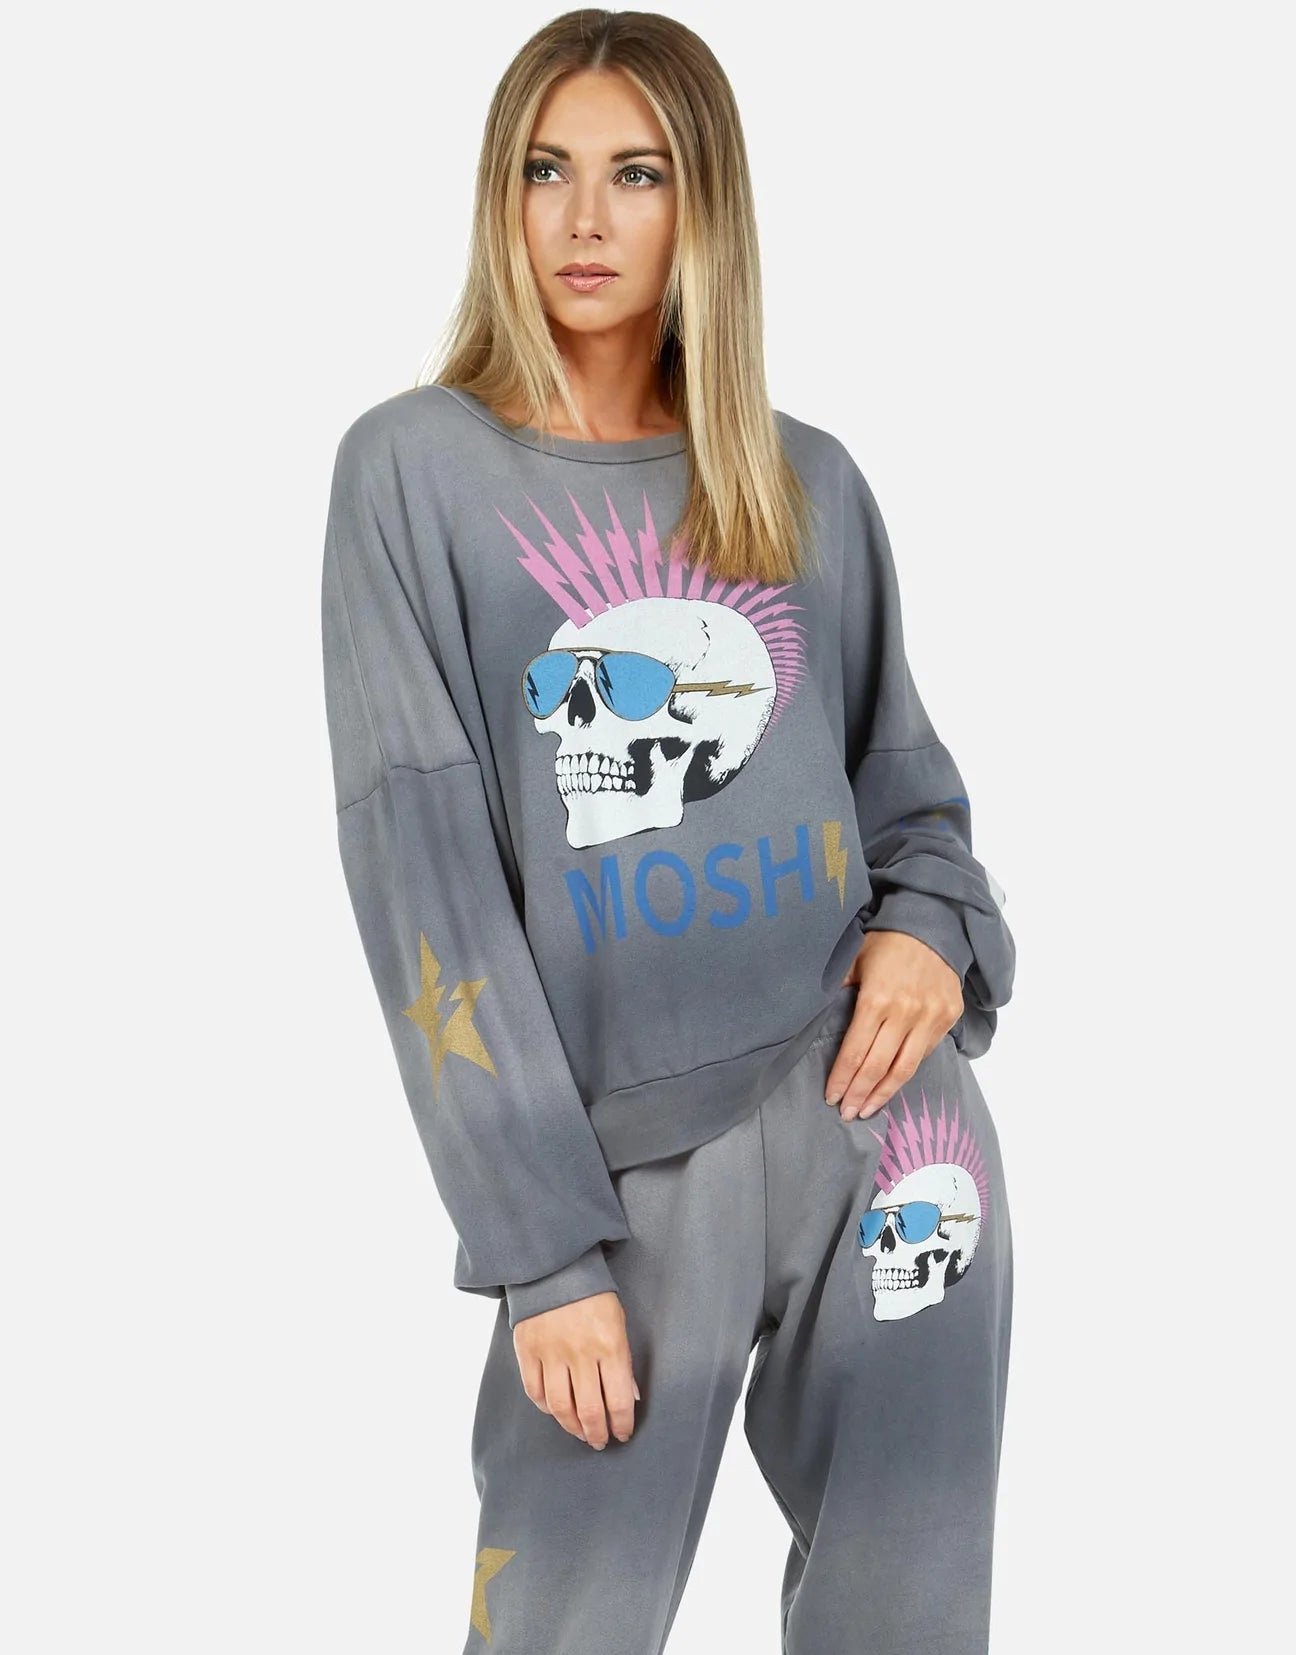 Shop Lauren Moshi Sierra Moshi Lightning Skull Sweatshirt - Premium Sweater from Lauren Moshi Online now at Spoiled Brat 